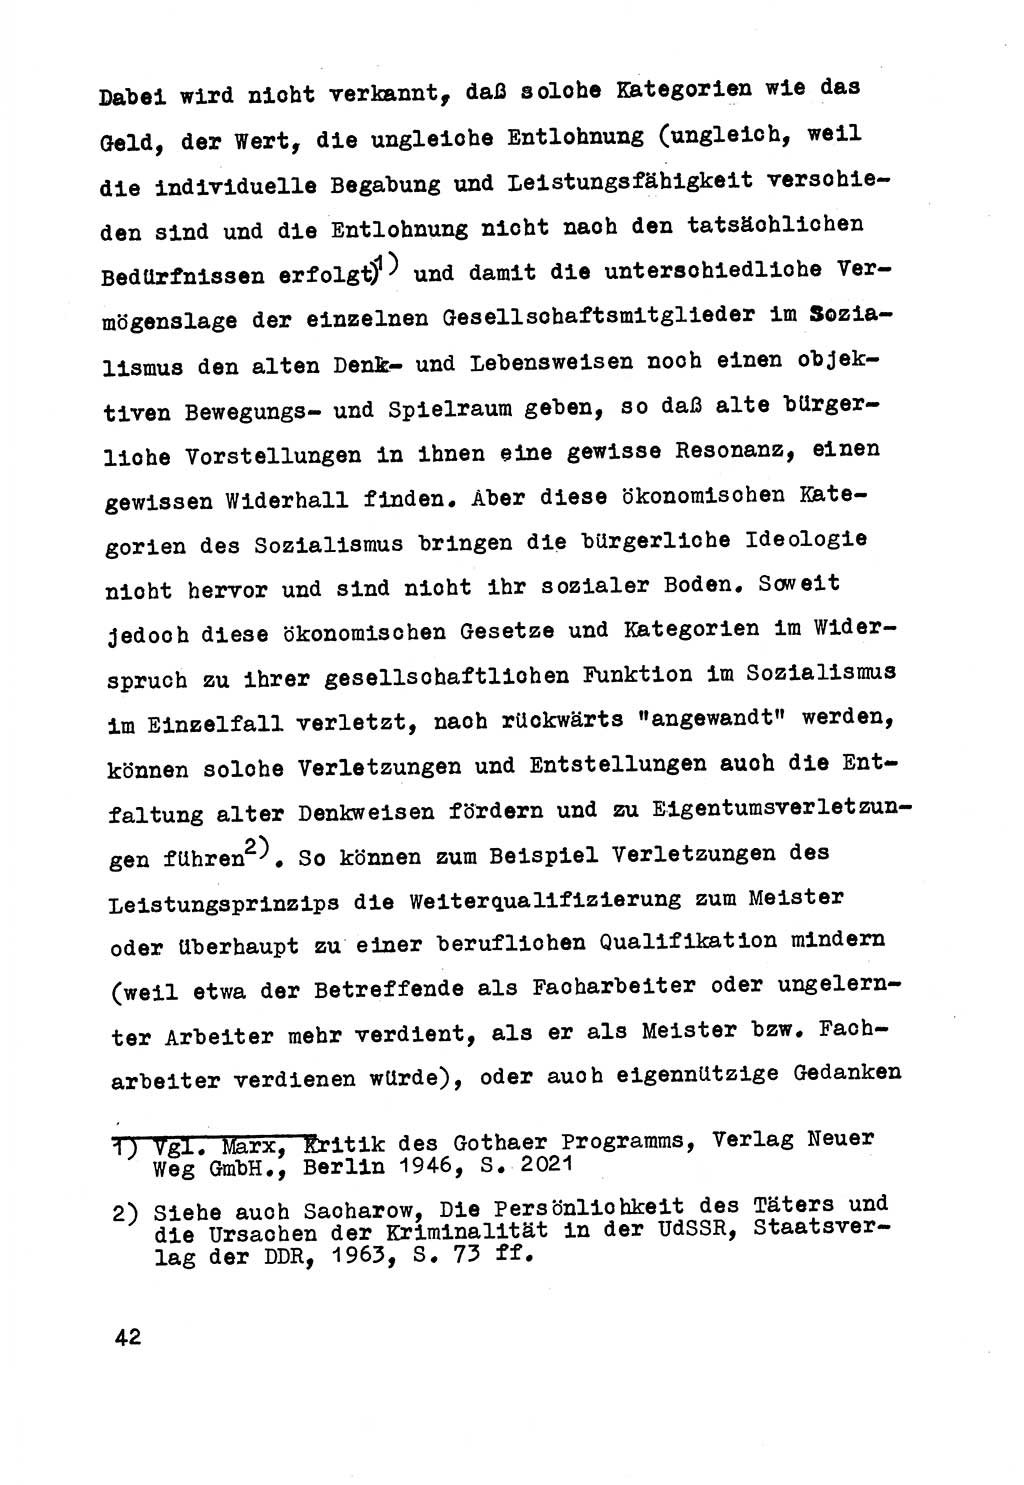 Strafrecht der DDR (Deutsche Demokratische Republik), Besonderer Teil, Lehrmaterial, Heft 5 1970, Seite 42 (Strafr. DDR BT Lehrmat. H. 5 1970, S. 42)